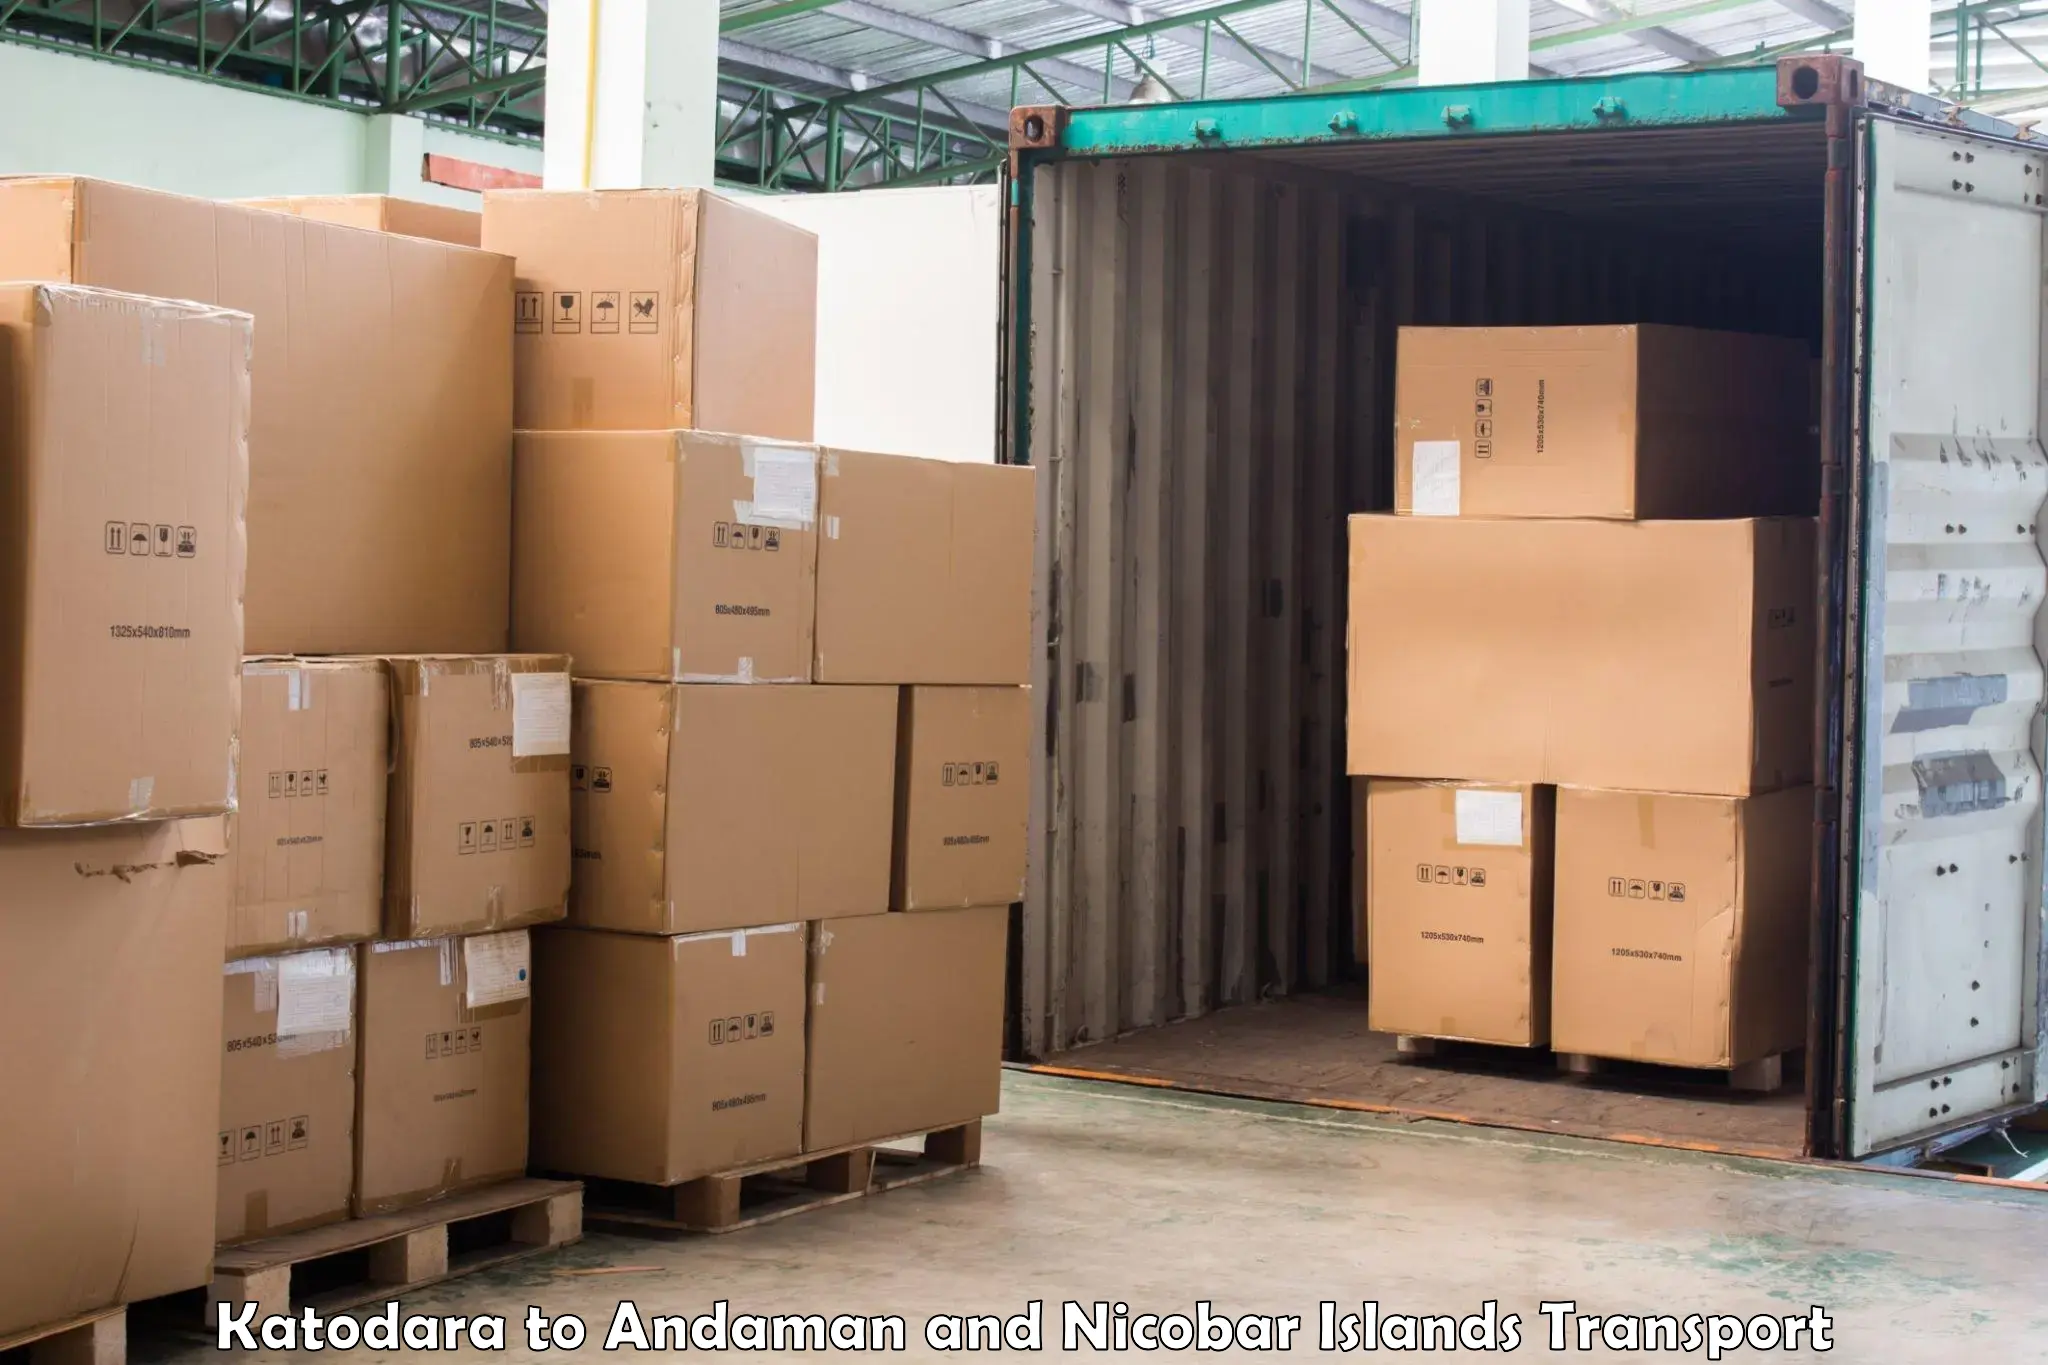 Container transport service Katodara to Andaman and Nicobar Islands